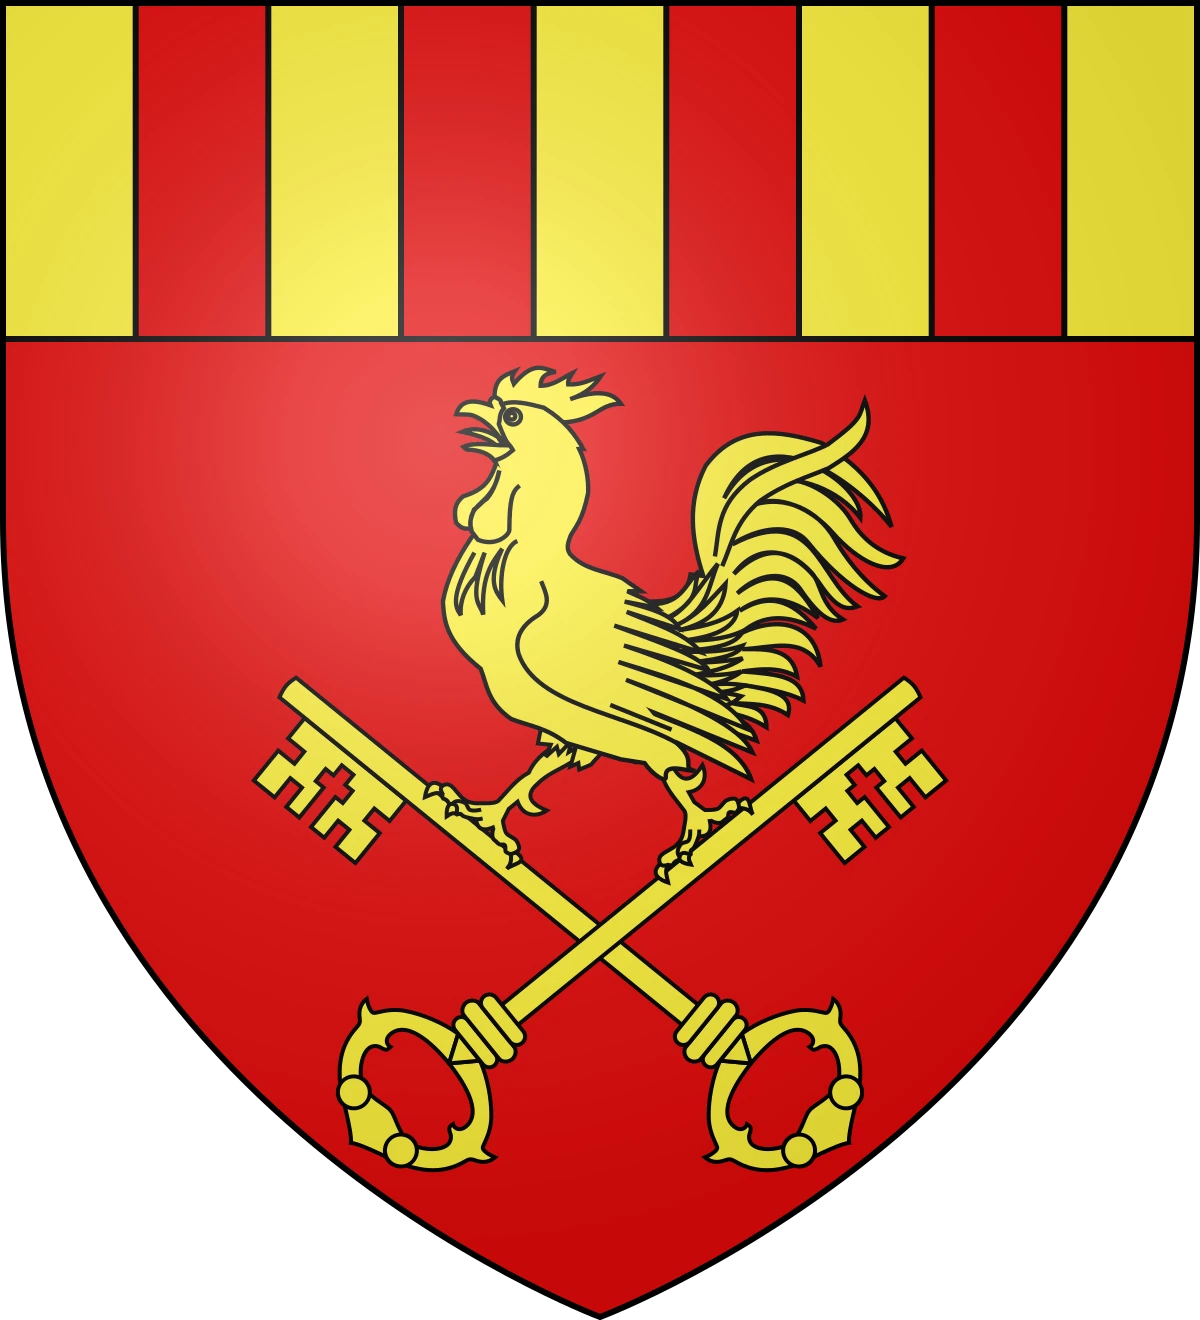 Logo blason ville de Théza, Pyrénées-Orientales, commune partenaire du parc d'attractions Fantassia